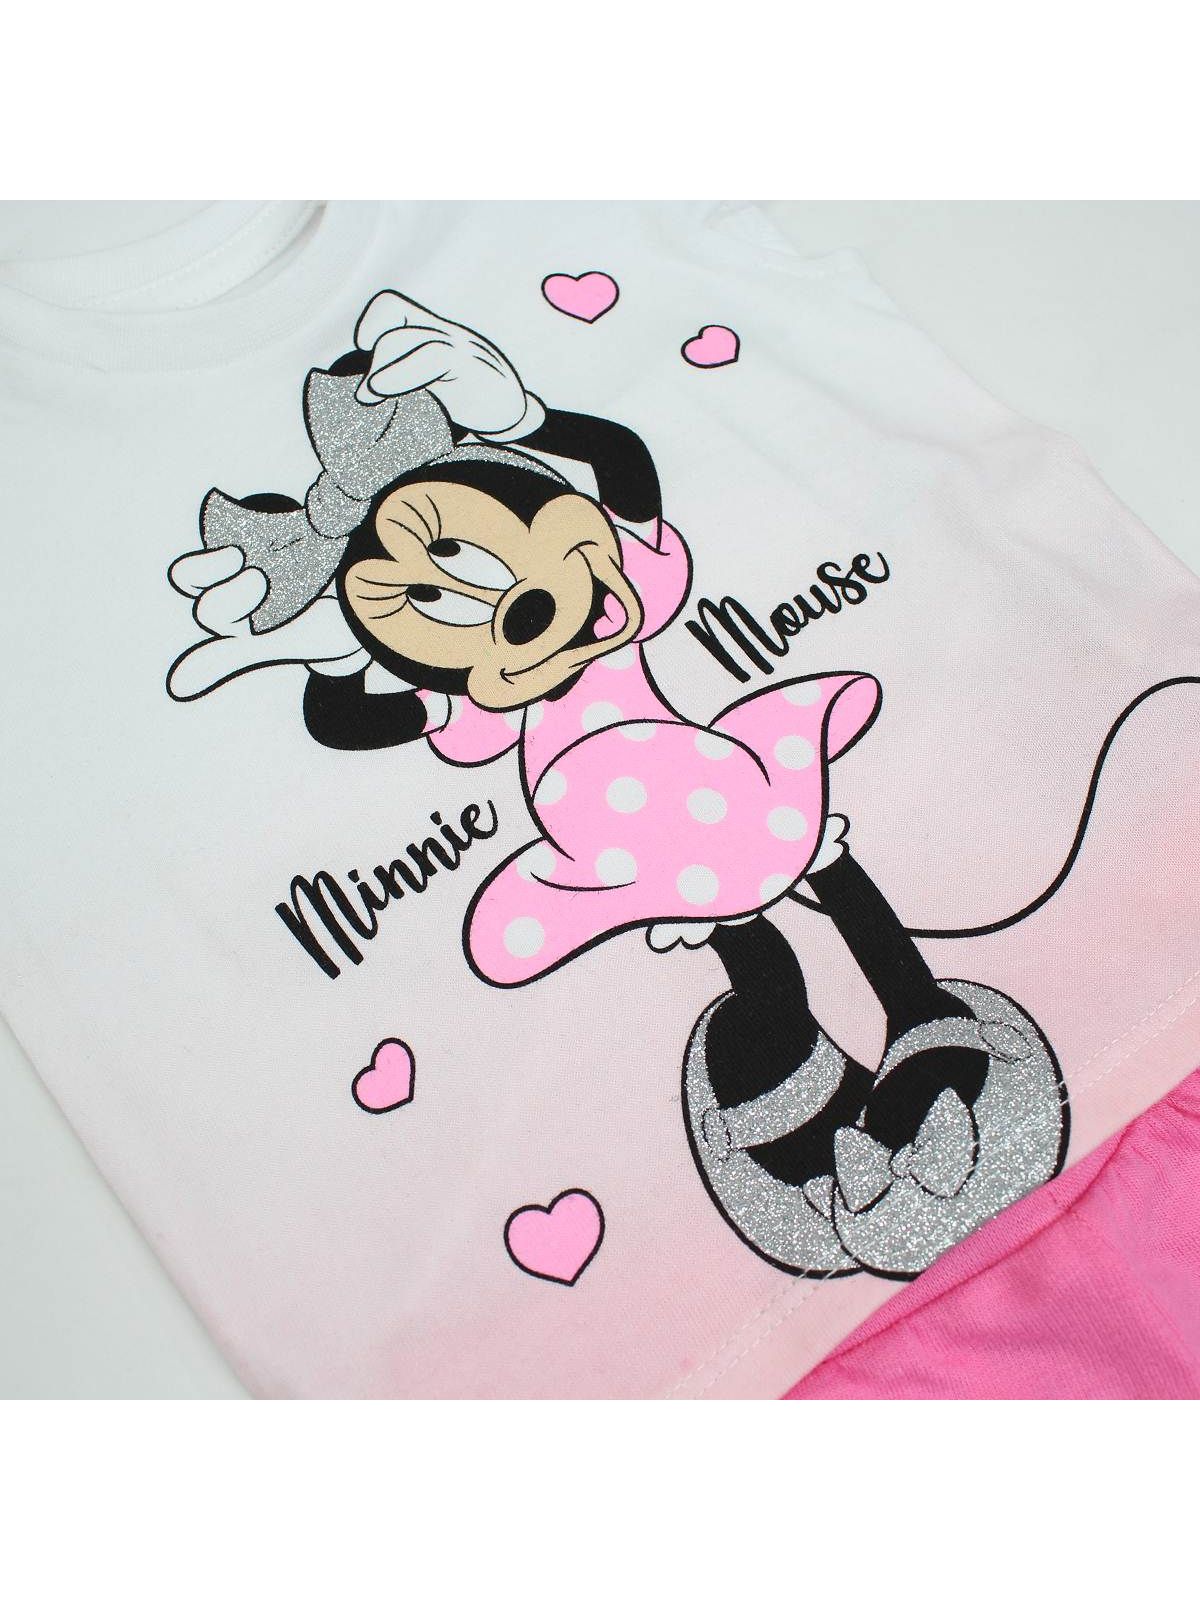 Minnie Kleidung von 2 Stück